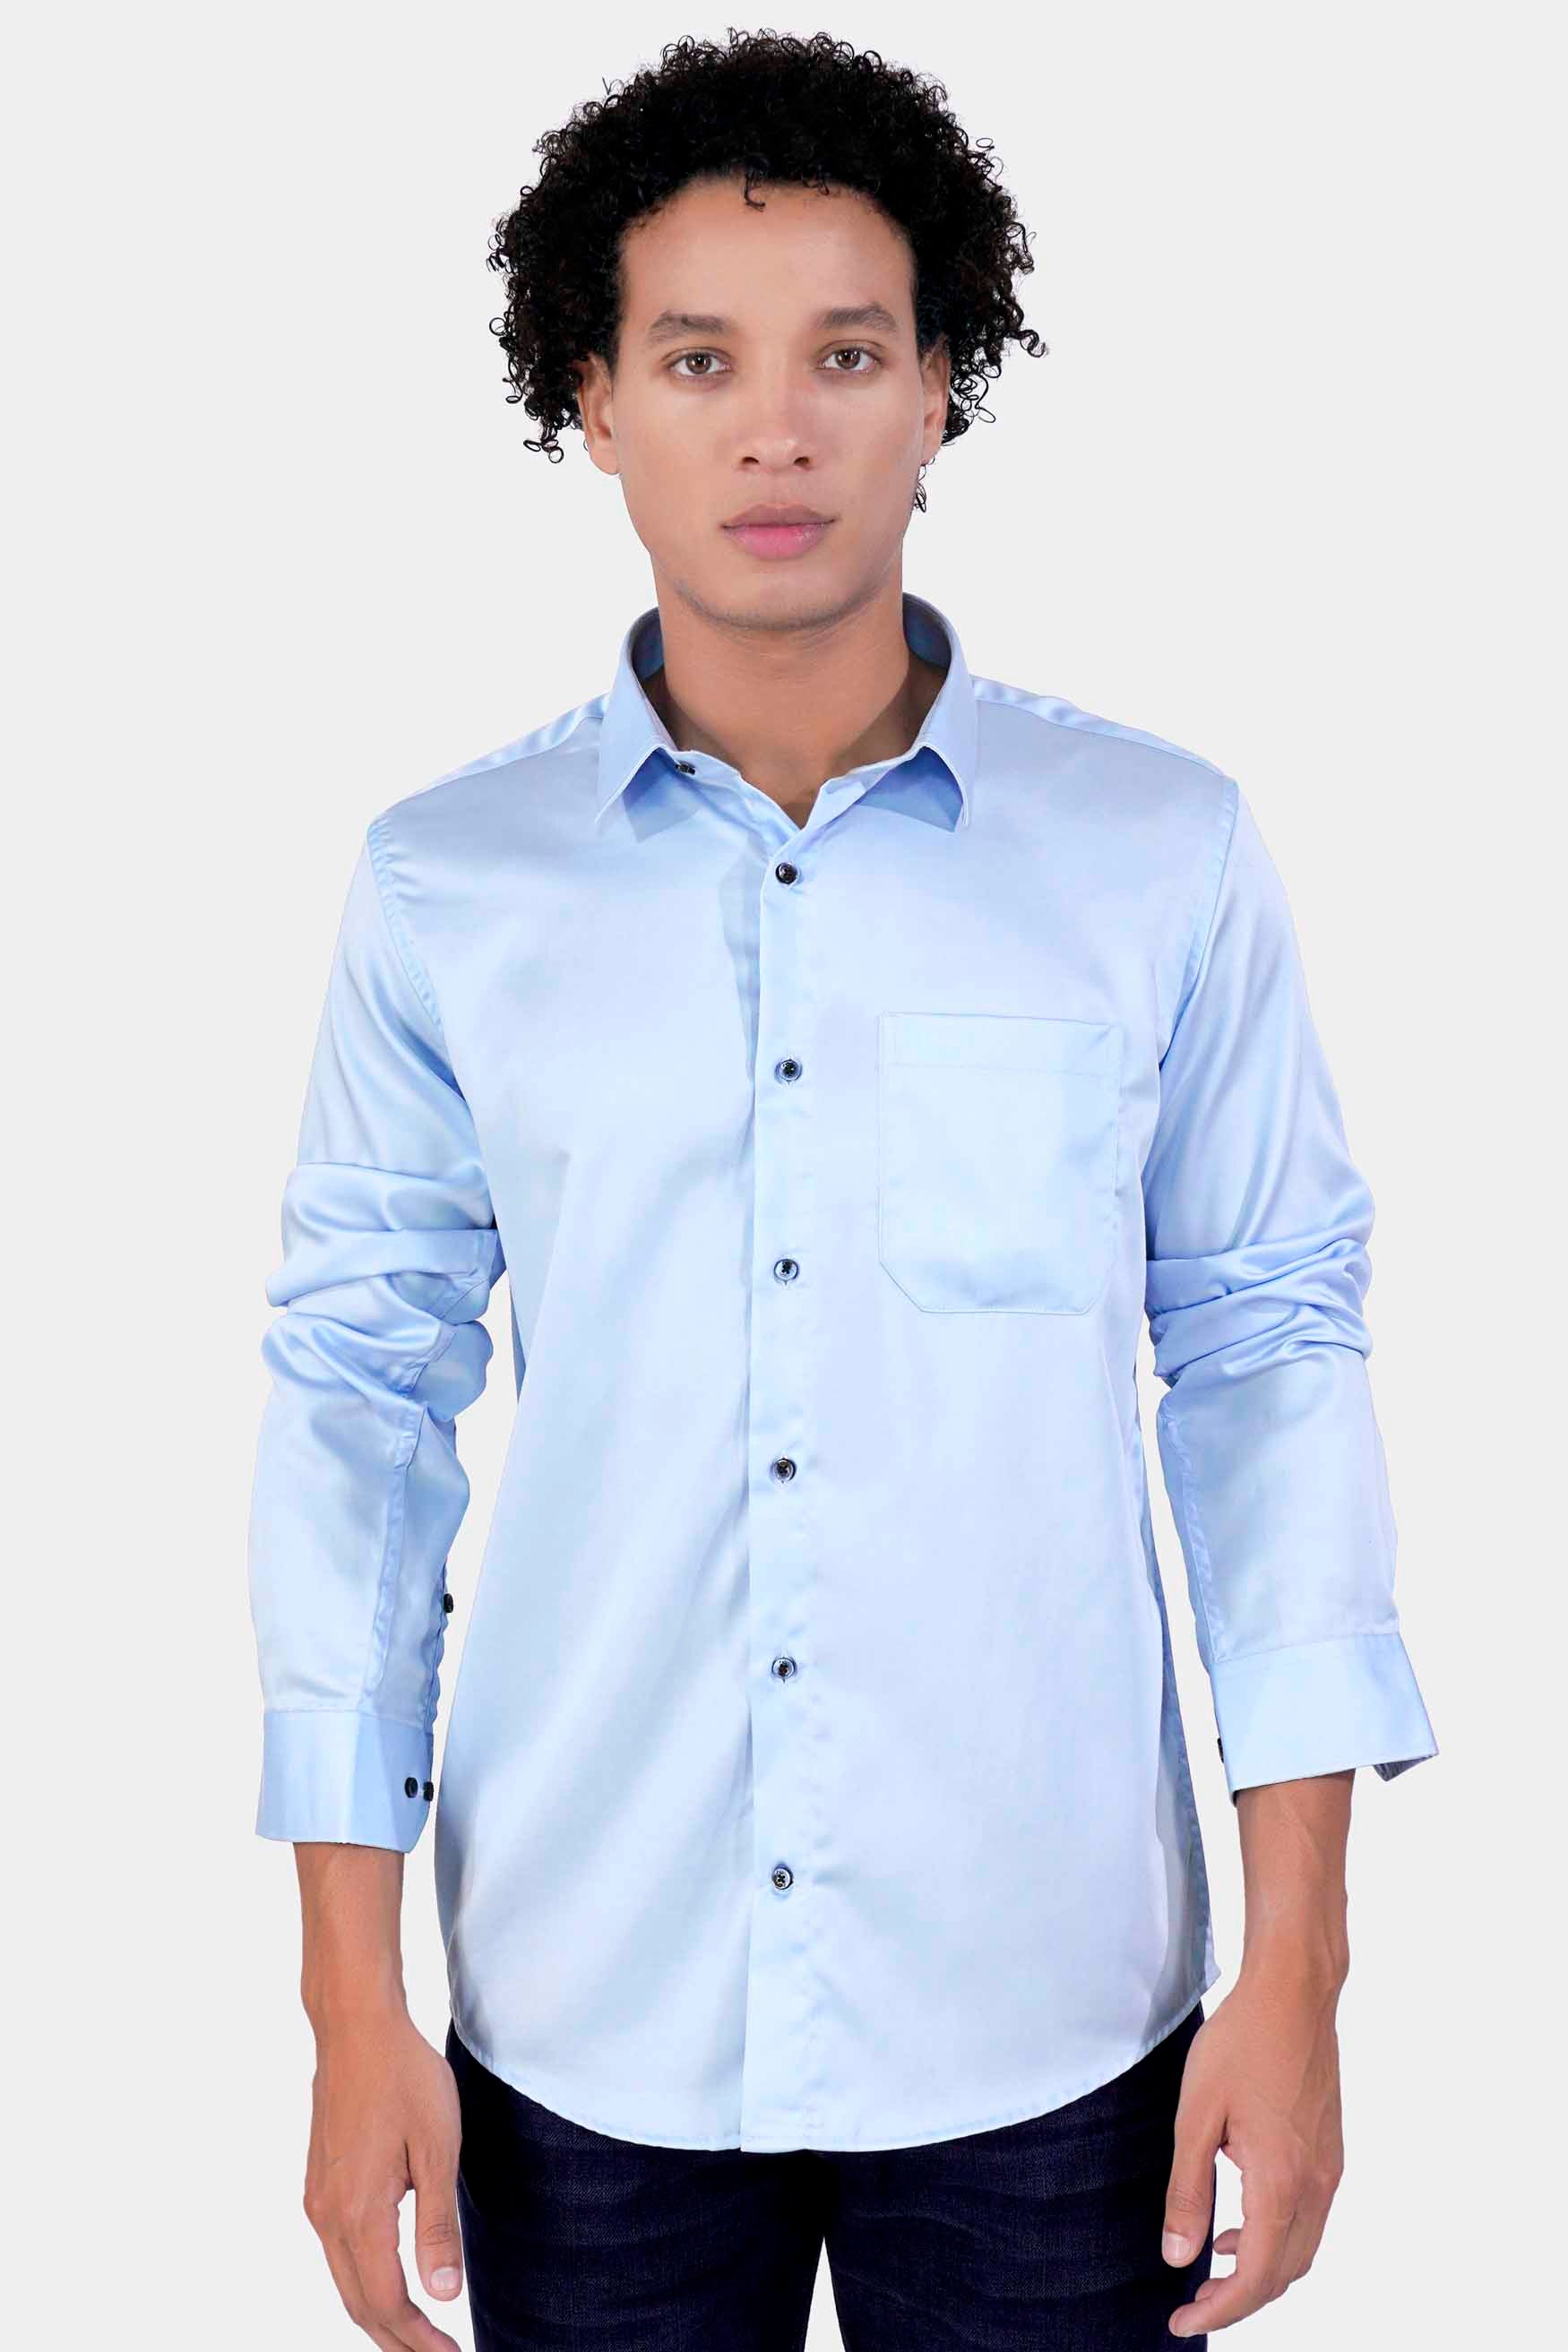 Blizzard Blue Subtle Sheen Super Soft Premium Cotton Shirt